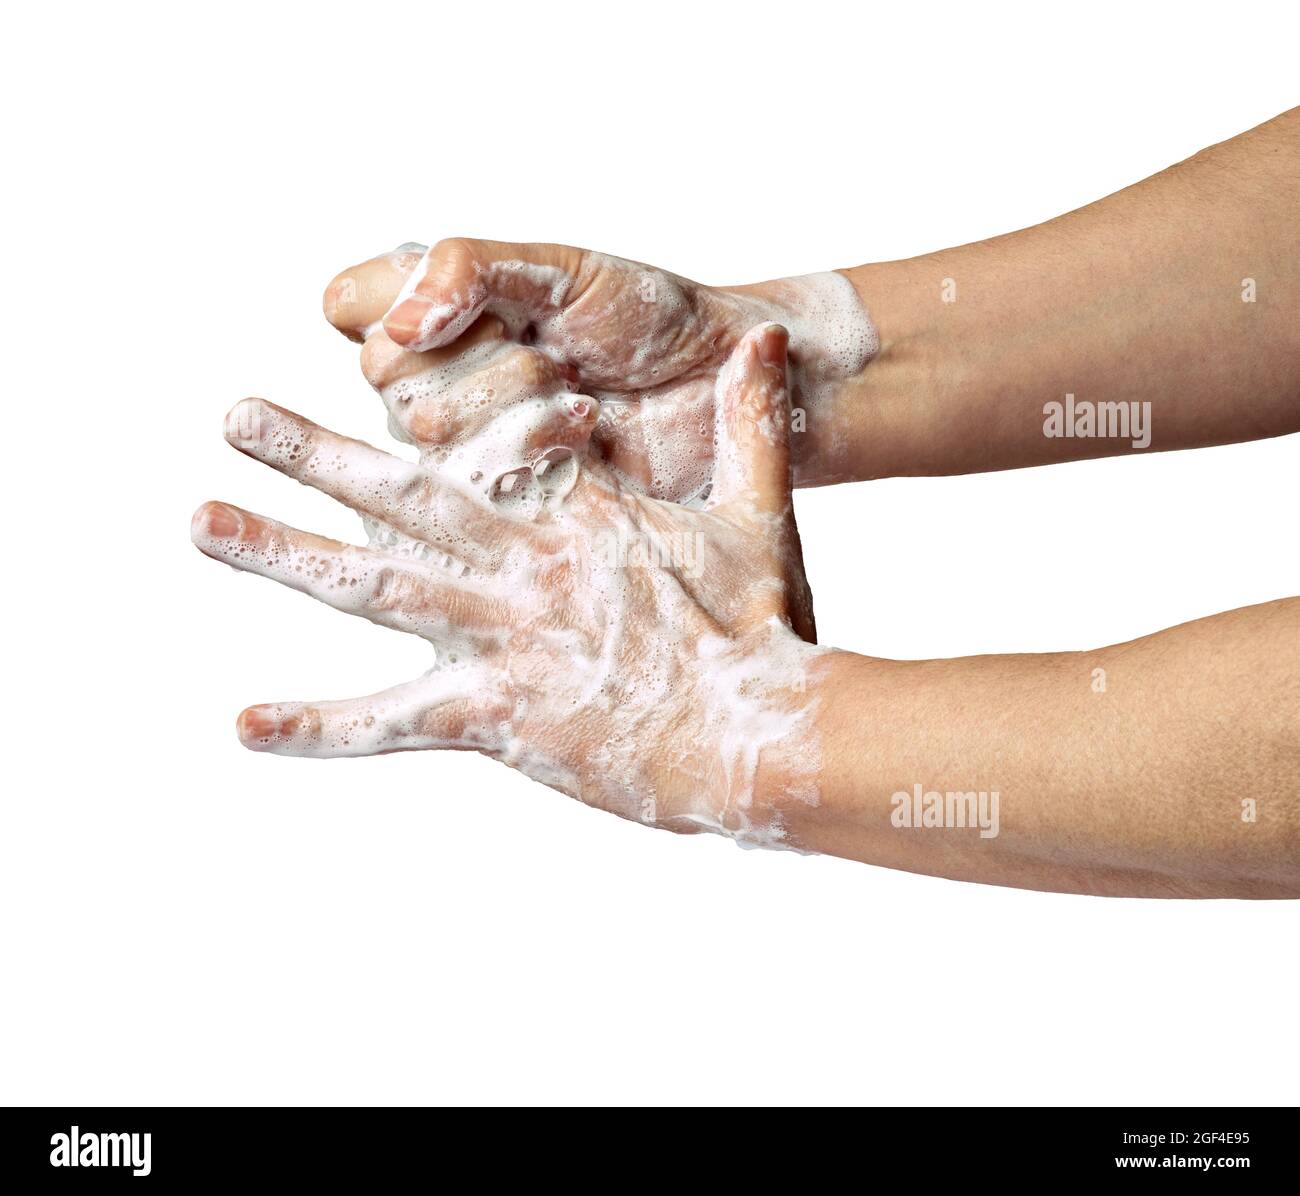 Händewaschen Seife Hygiene sauber Virus edpidemische Krankheit Corona Rauchwasser im Bad Stockfoto